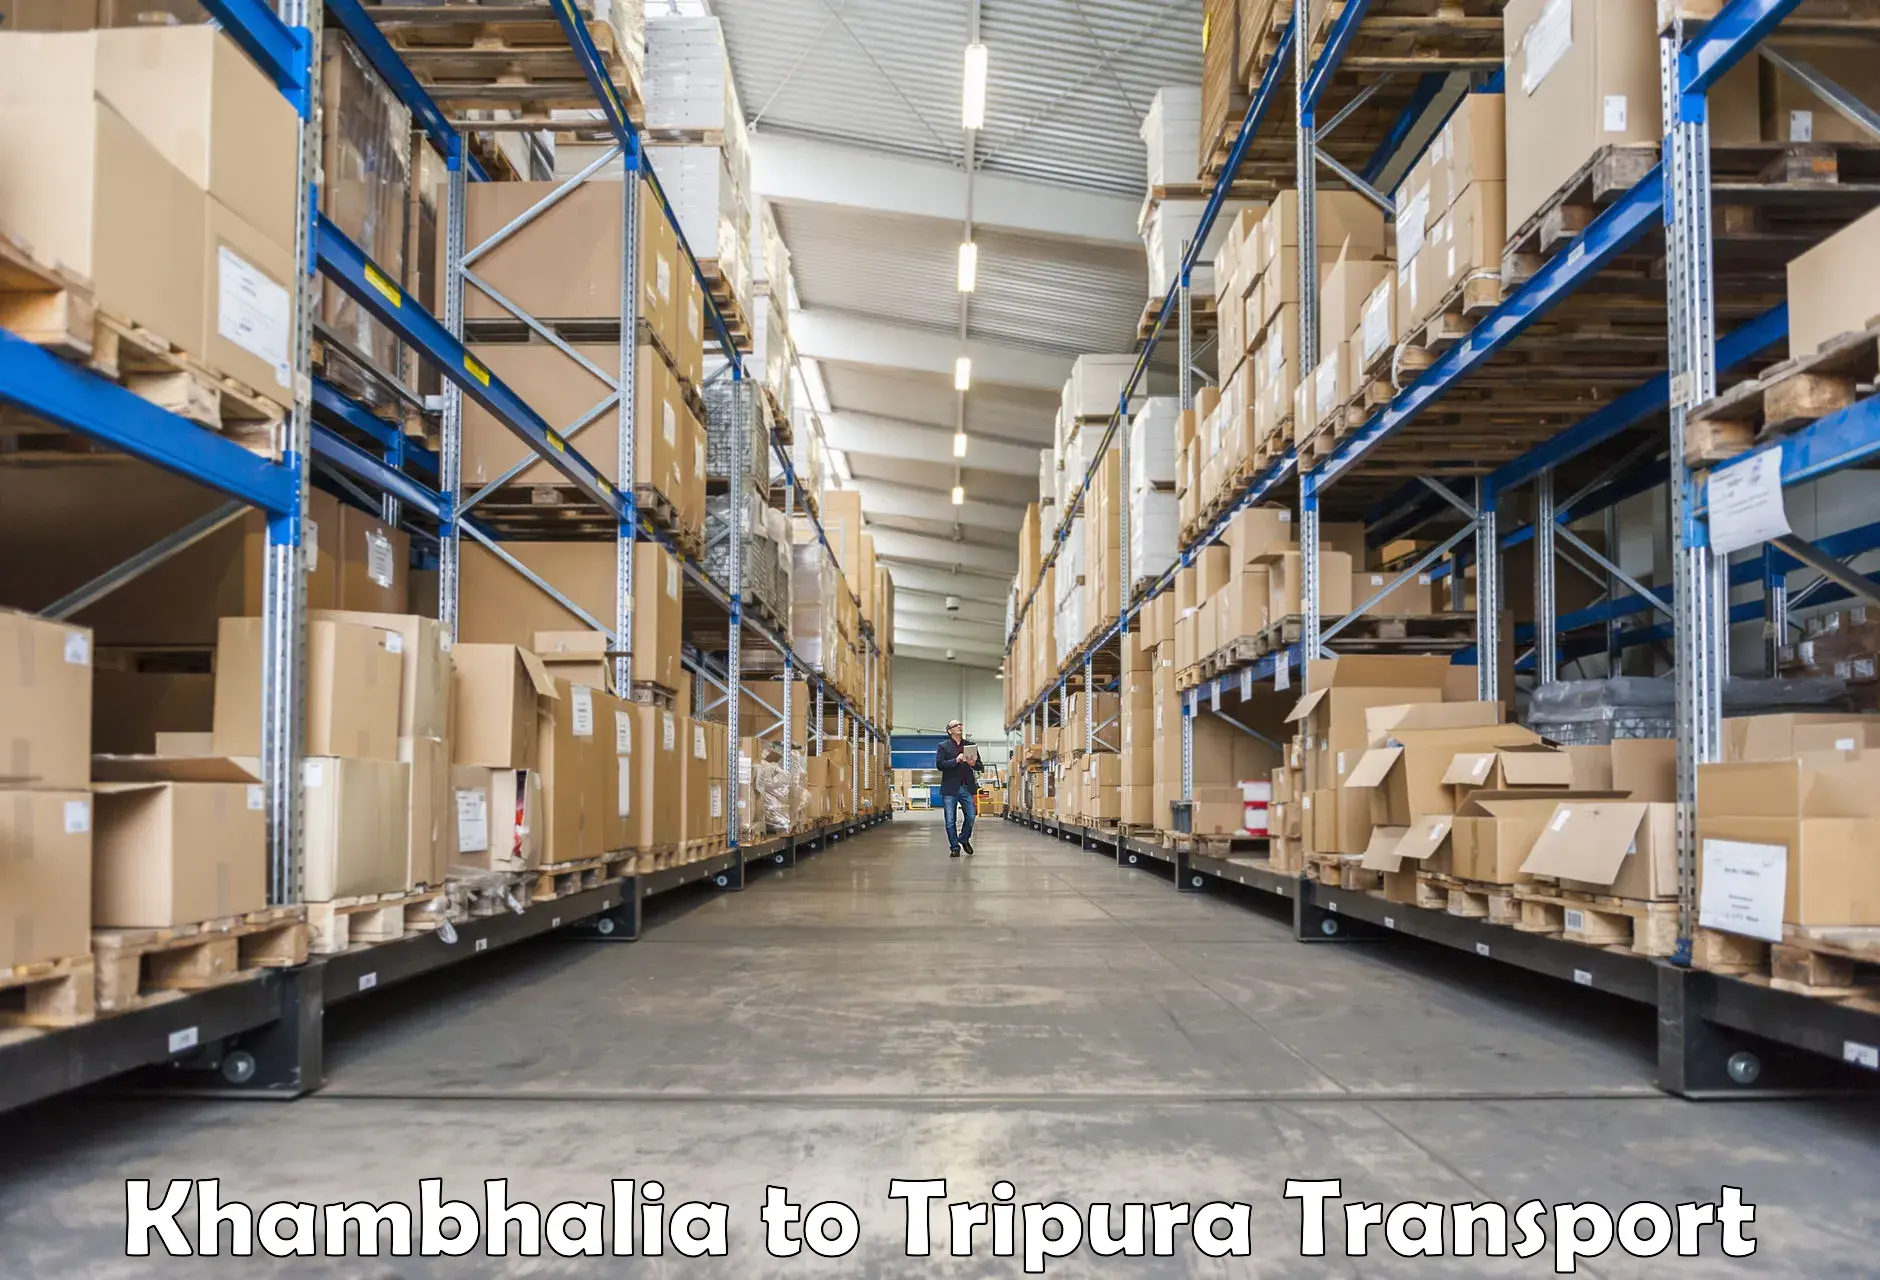 Nationwide transport services Khambhalia to Udaipur Tripura